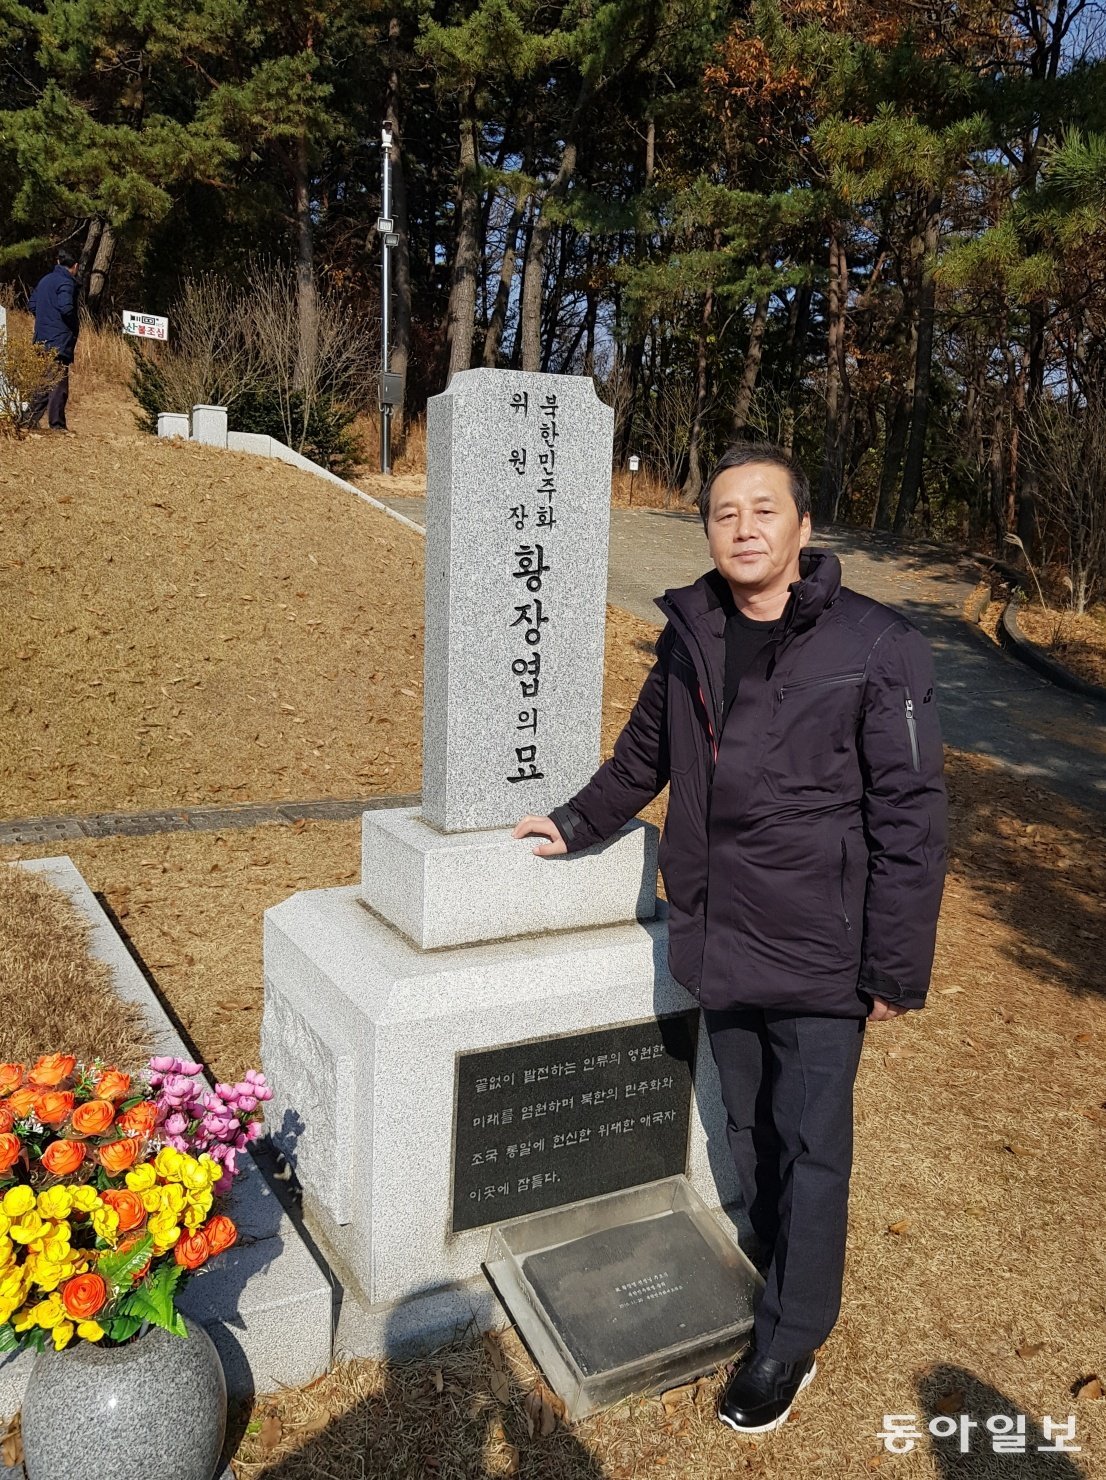 2019년 황장엽 전 노동당 비서의 기일인 10월 10일을 맞아 그의 묘소를 방문한 김 대표.  김 대표는 자신에게 큰 영향을 주었던 황 전 비서의 묘소를 매년 빠지지 않고 찾고 있다.